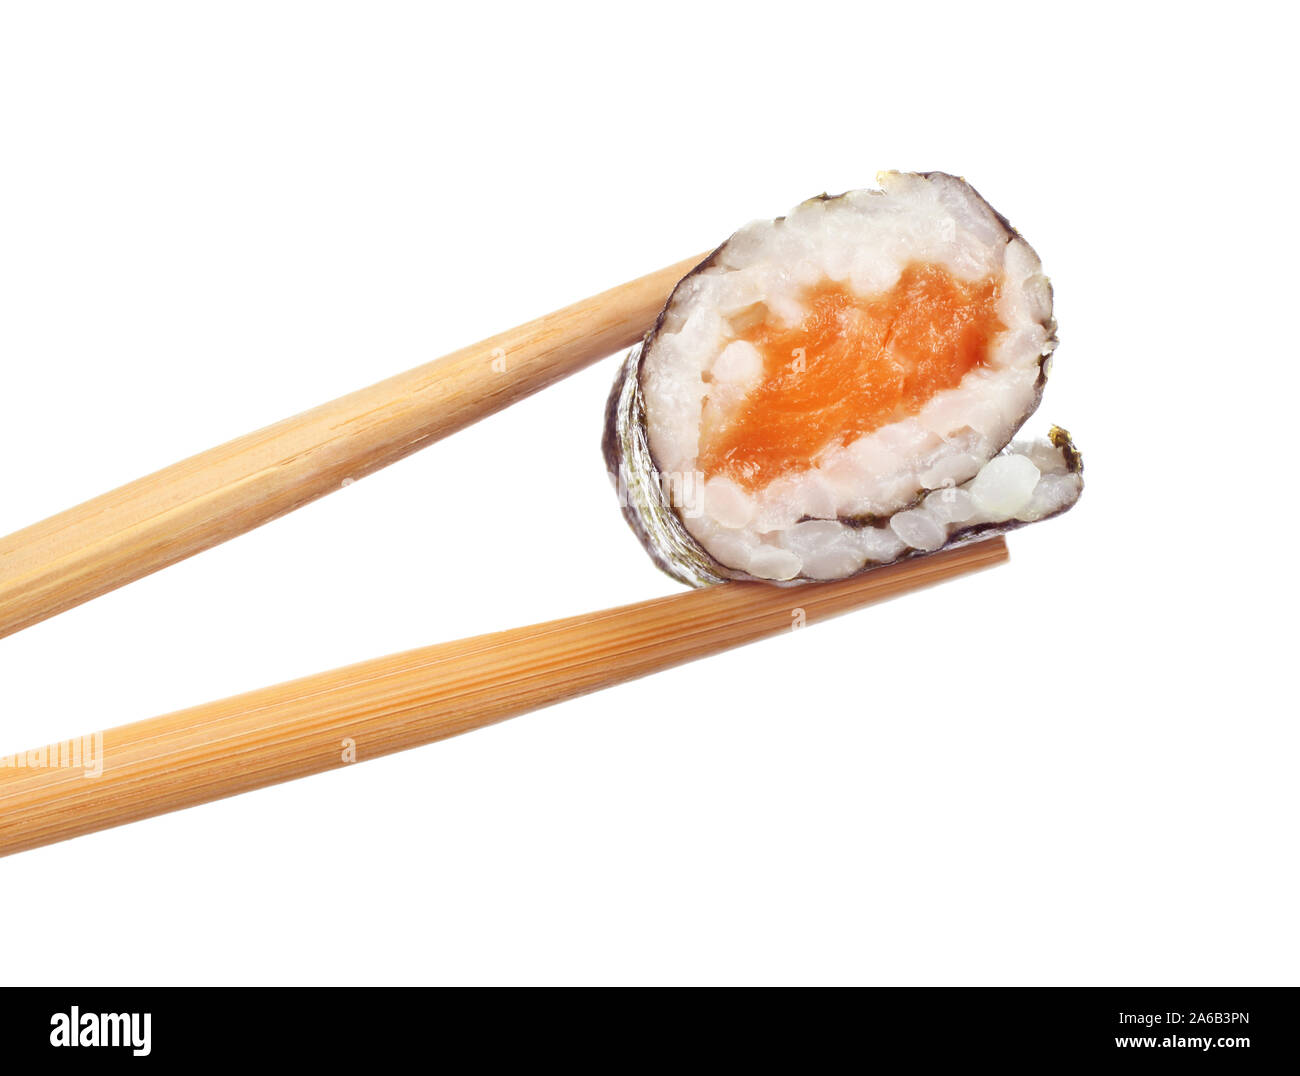 Rotolo di sushi pezzi con Salmone, riso, avocado, cetriolo e nori isolati su sfondo bianco. La deliziosa cucina giapponese Foto Stock